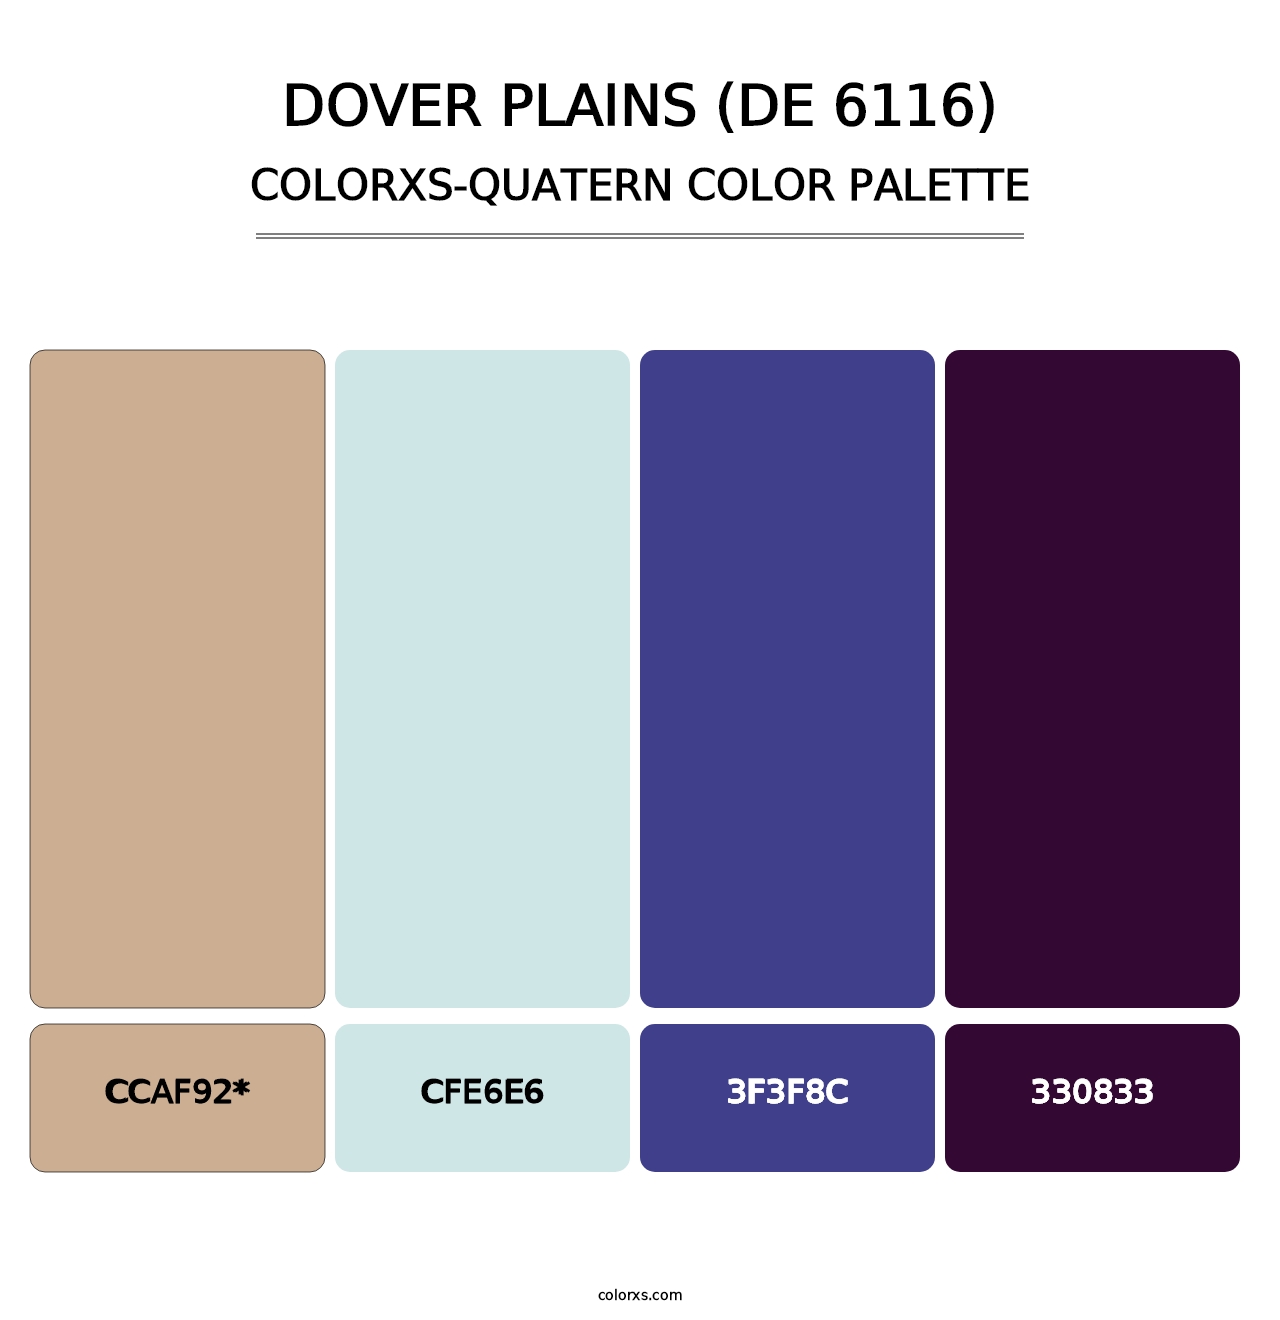 Dover Plains (DE 6116) - Colorxs Quatern Palette